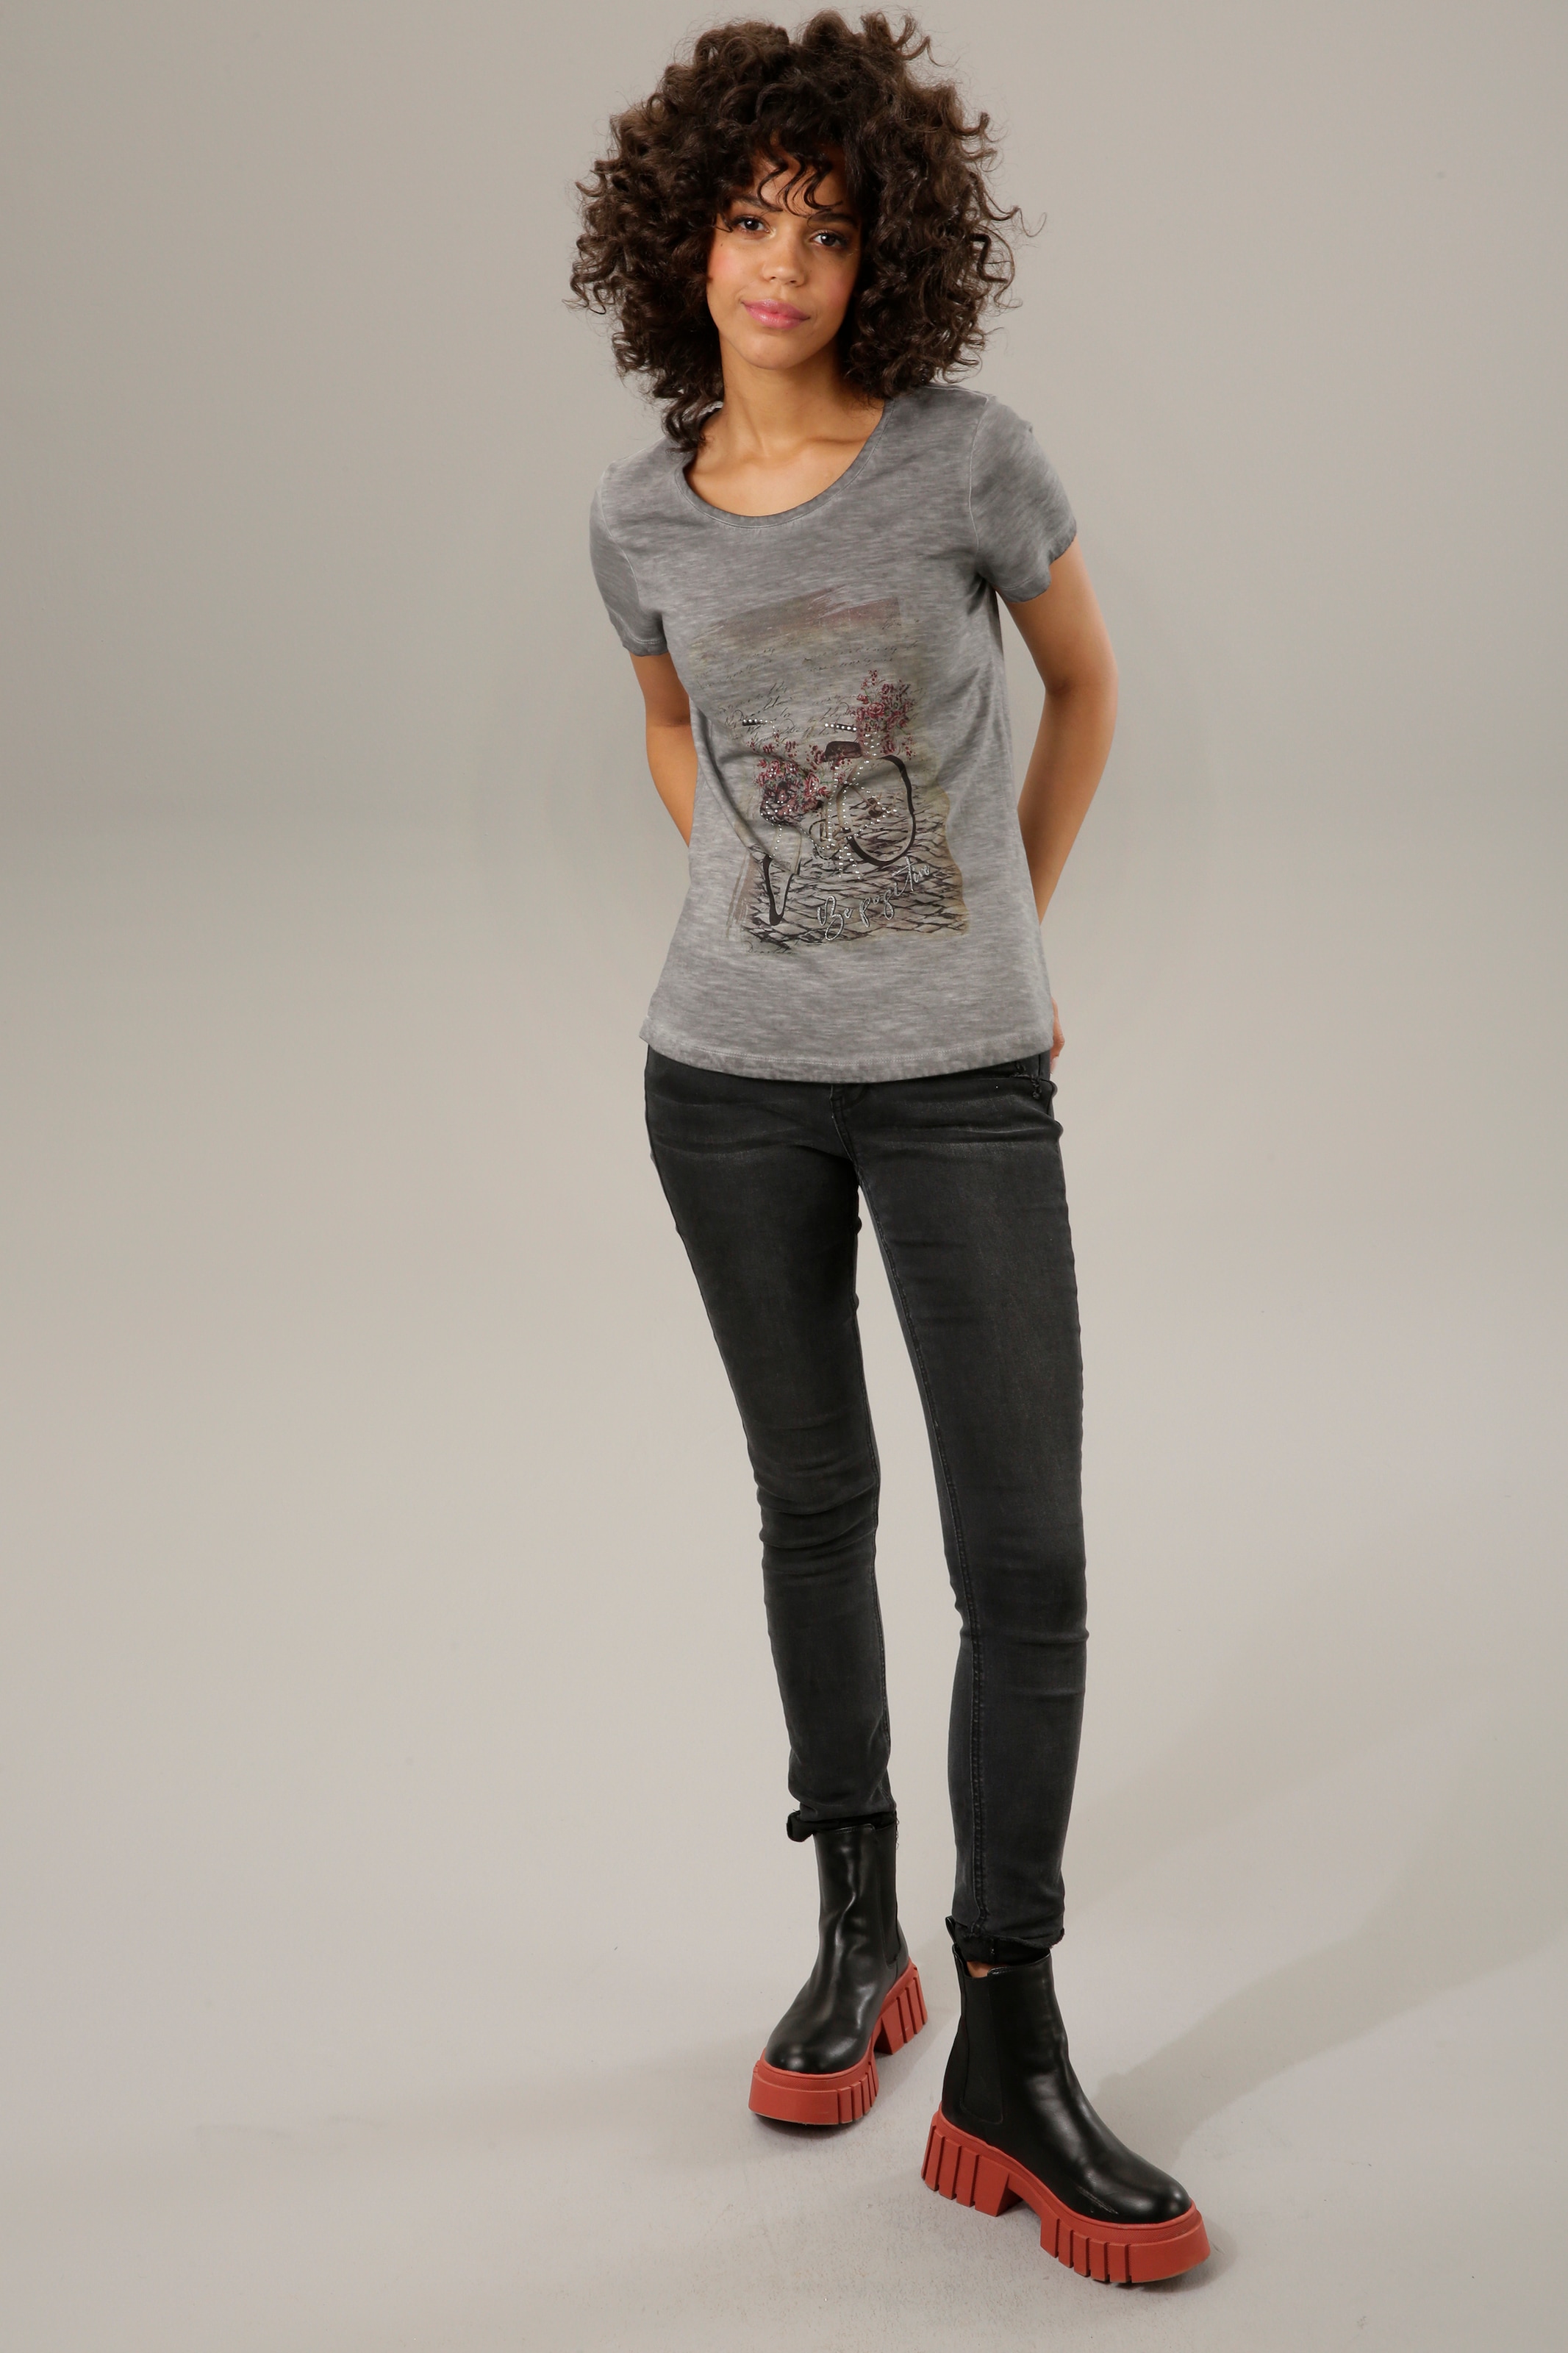 Shop Aniston Glitzersteinchen T-Shirt, CASUAL OTTO Online verzierter Frontdruck mit im